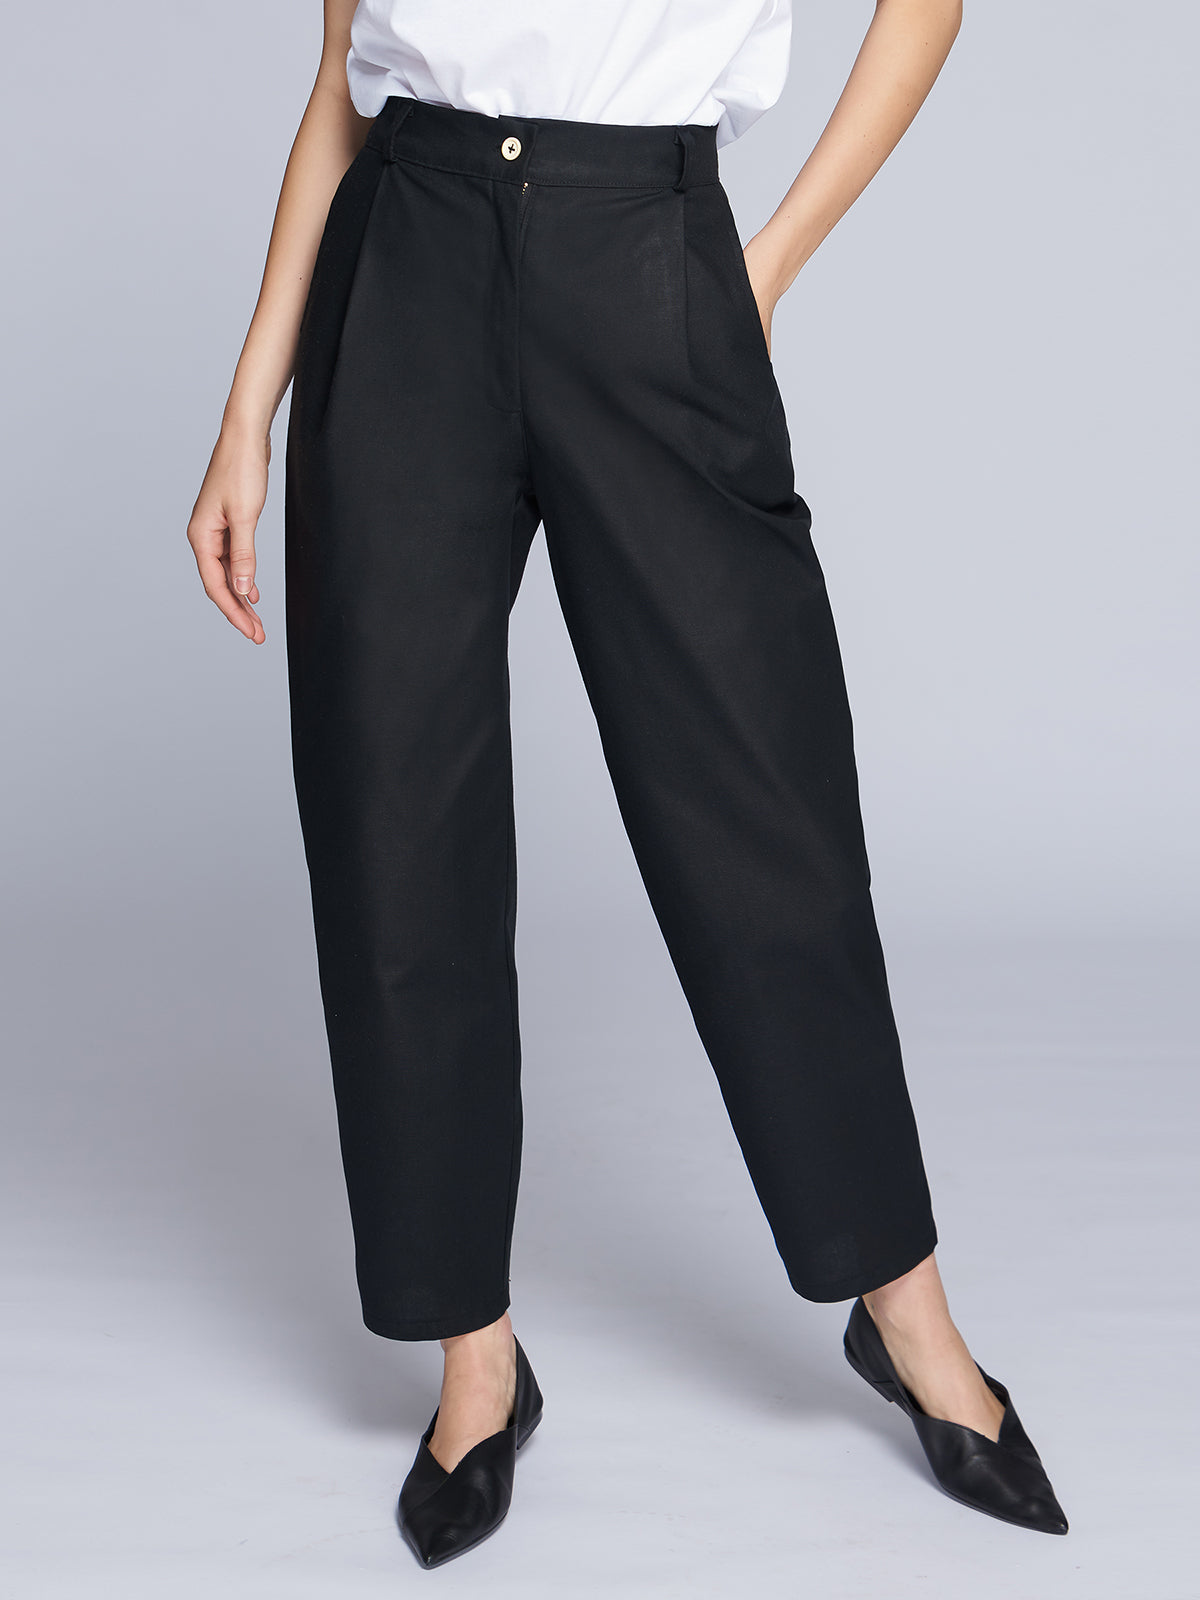 Black cotton slouchy women's pants